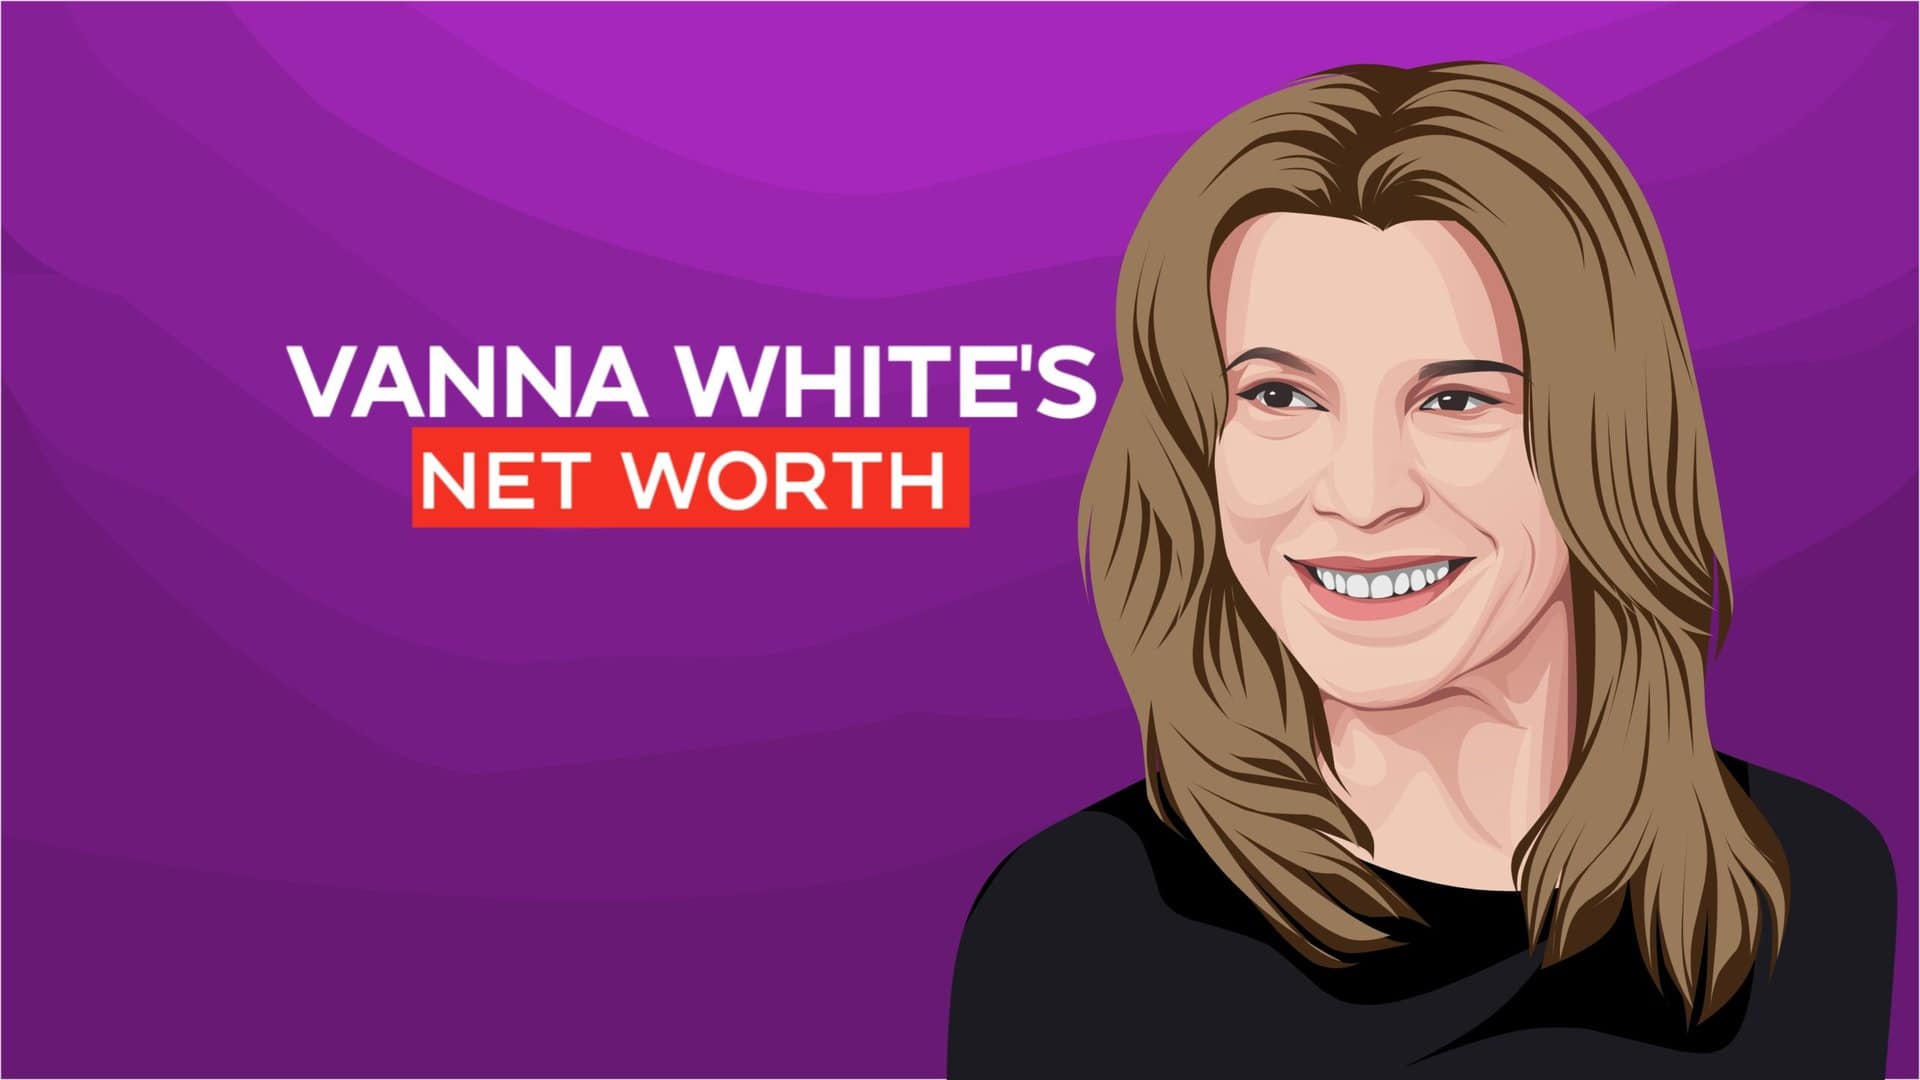 Vanna White's net worth